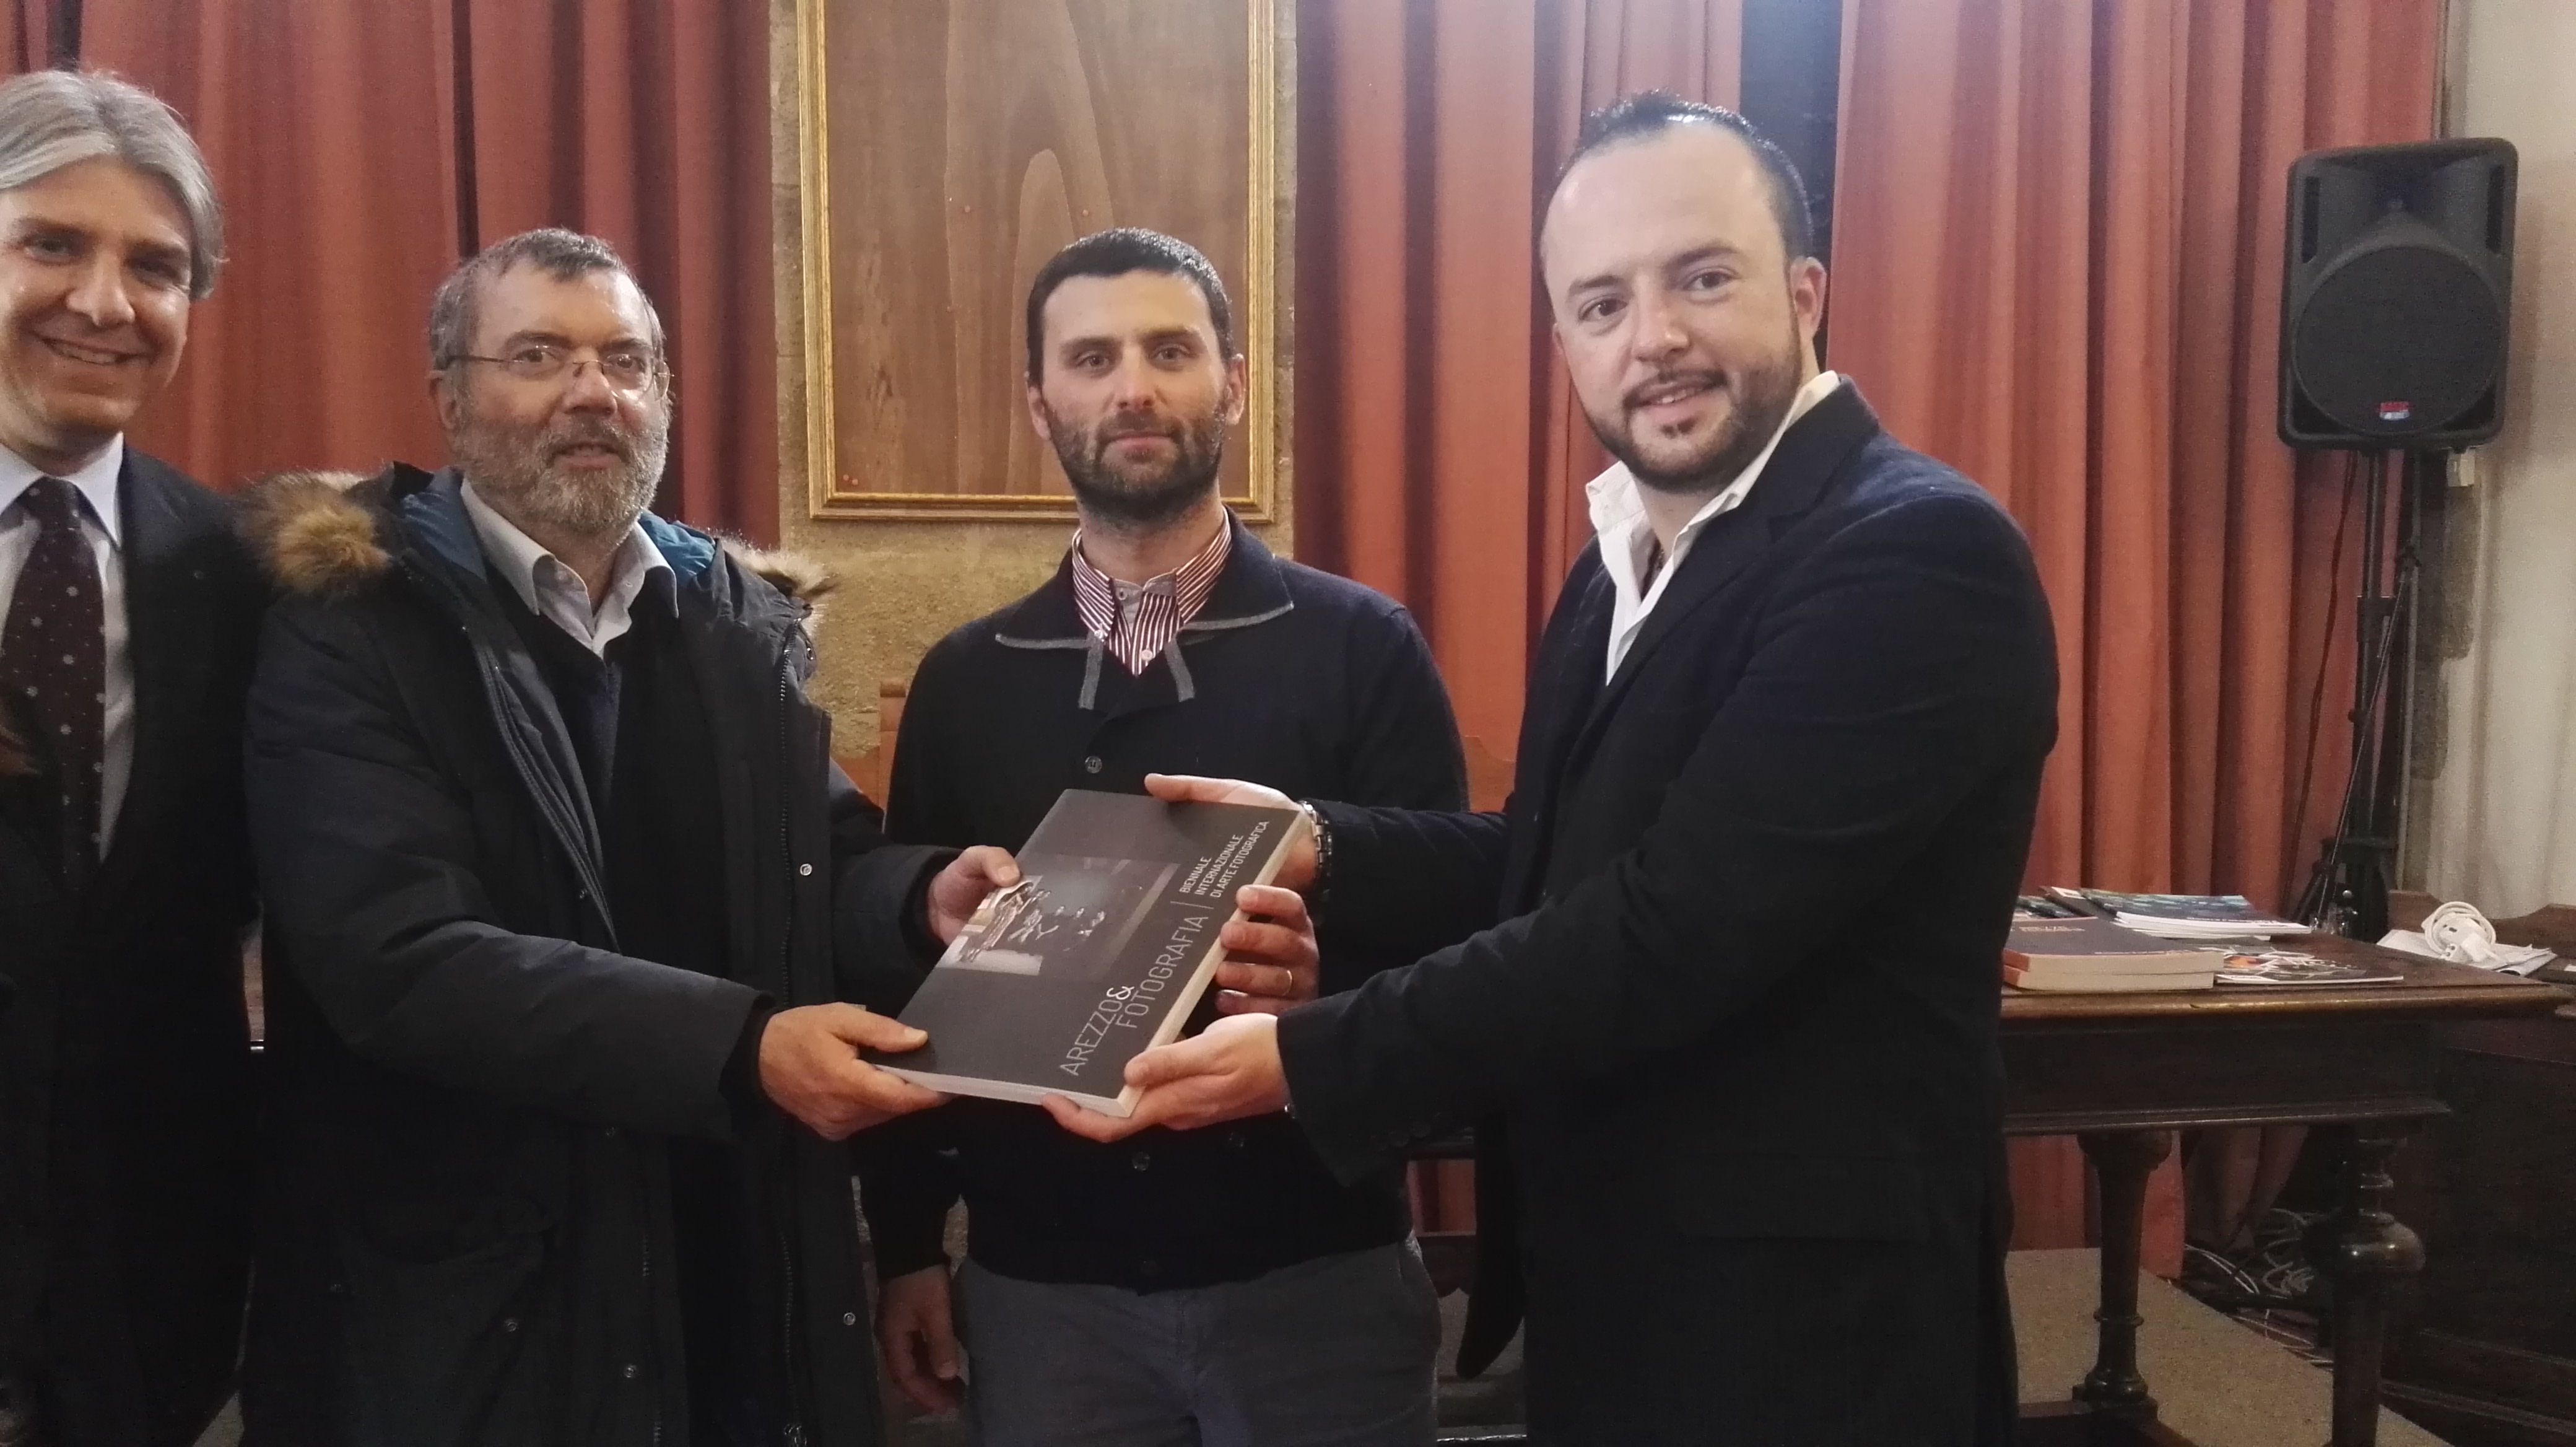 L’associazione Imago dona i suoi libri alla Biblioteca Città di Arezzo